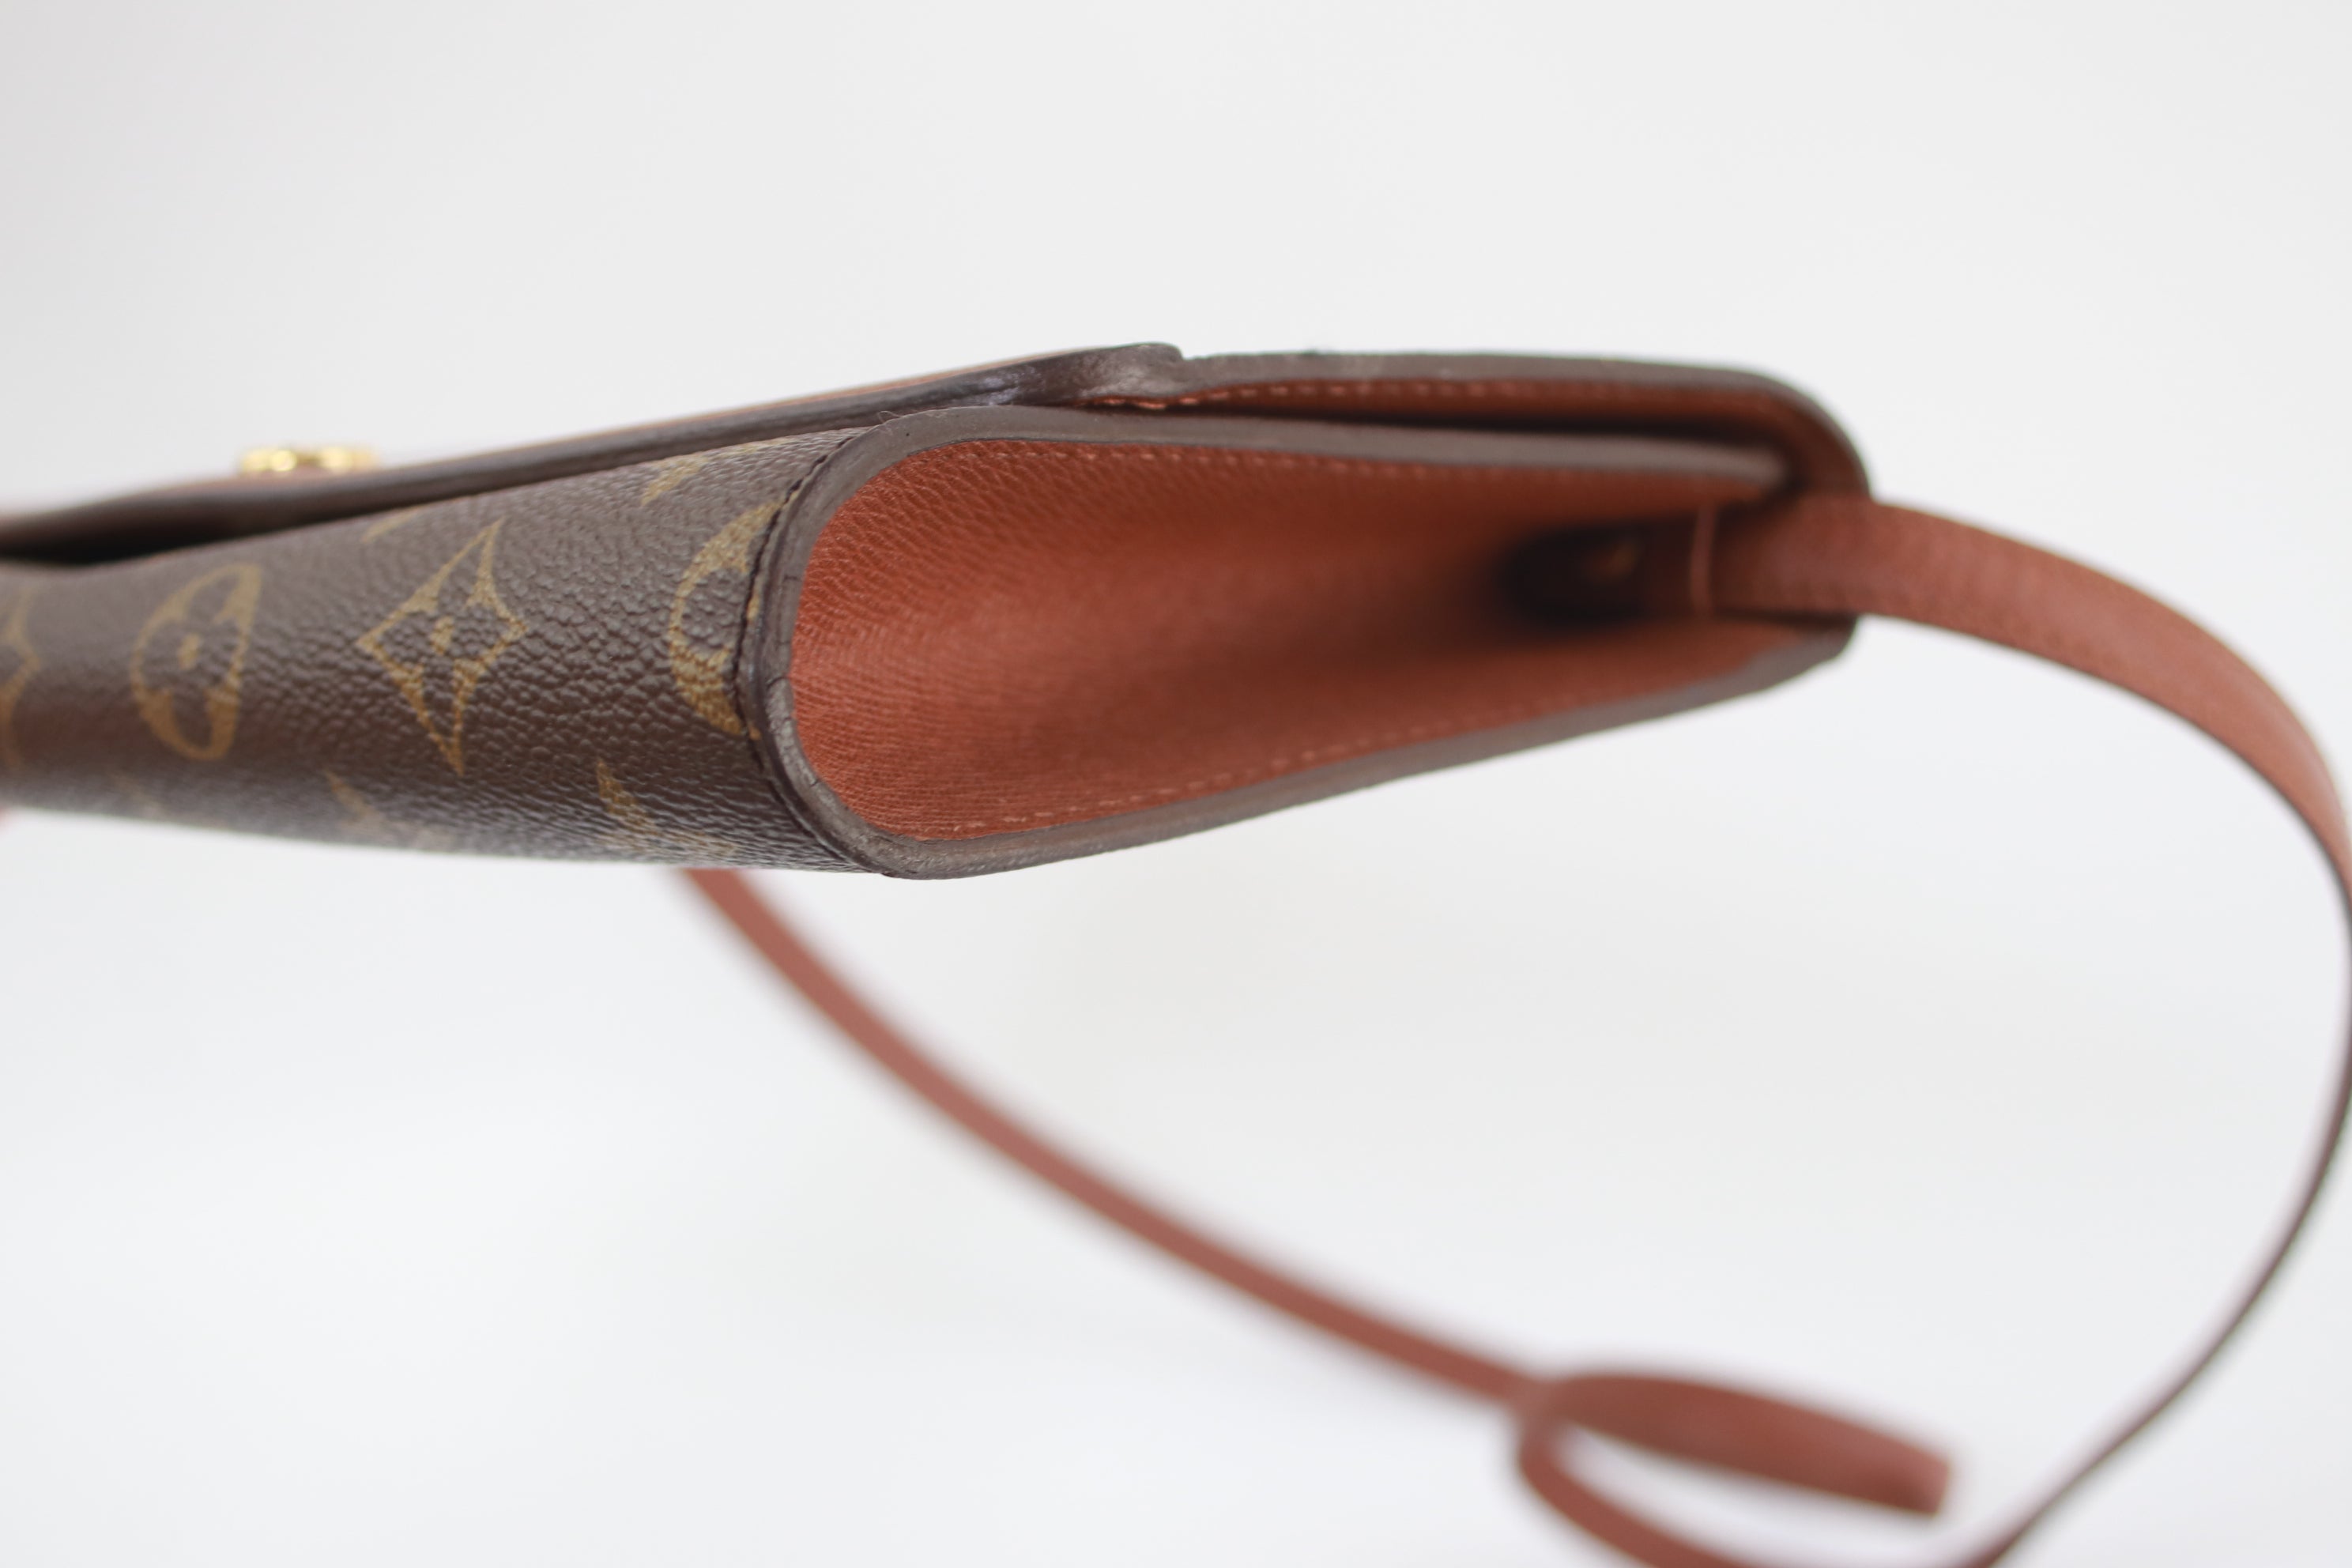 Louis Vuitton Duffle Bag 2way shoulder(Brown)